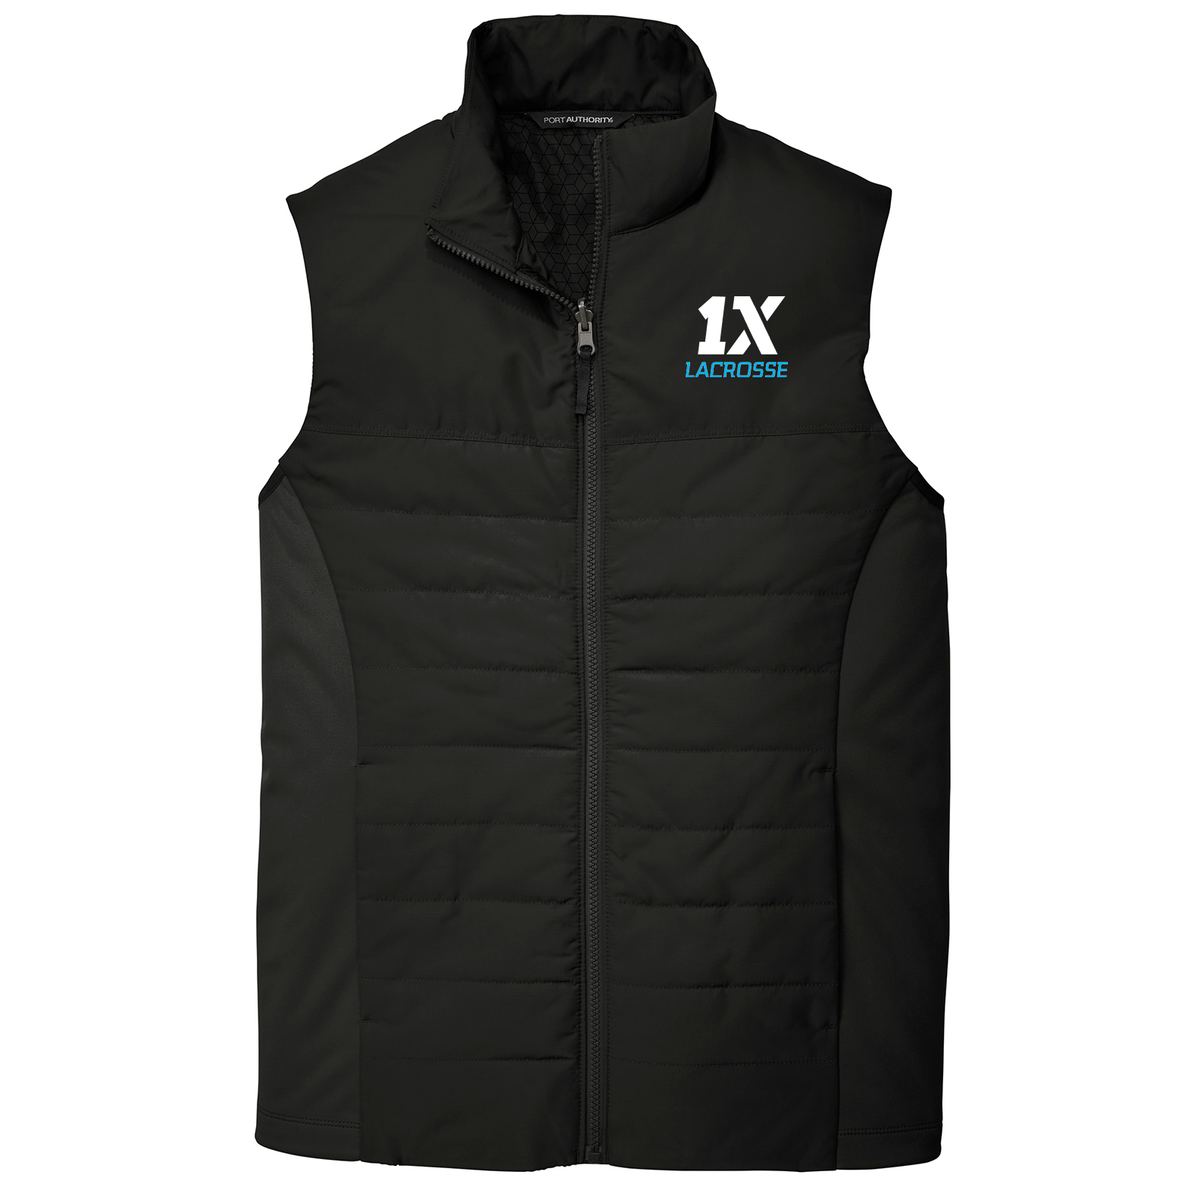 1X Lacrosse Vest